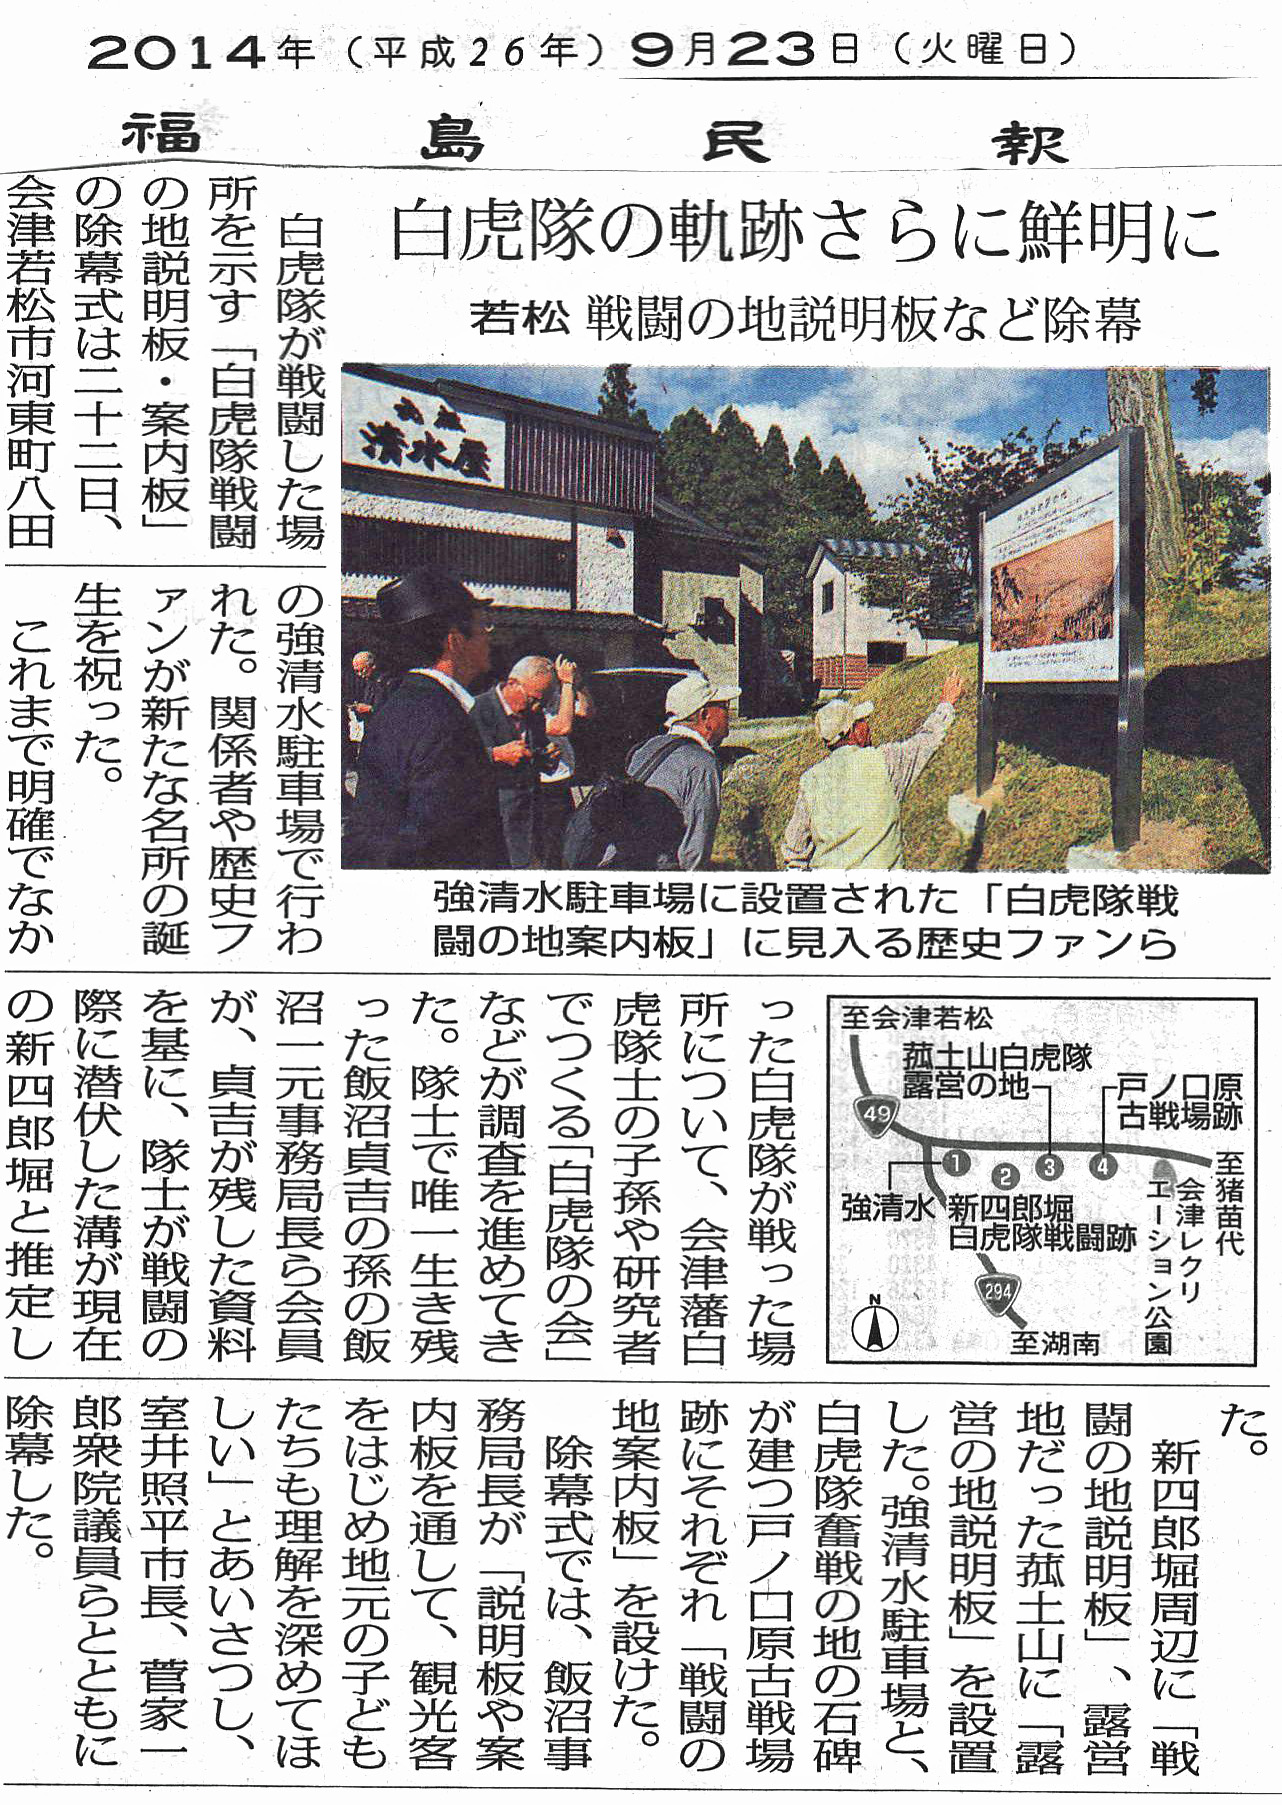 「福島民報」 2014年9月23日